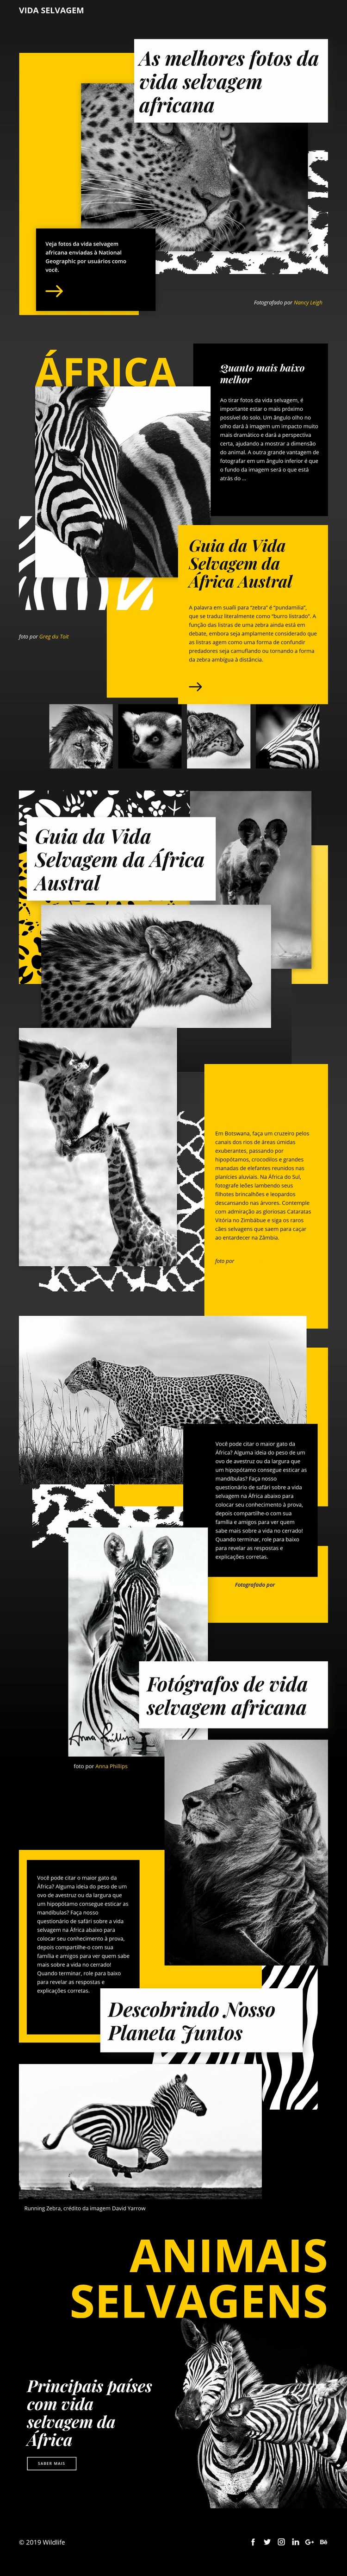 Fotos de animais selvagens Modelo de uma página